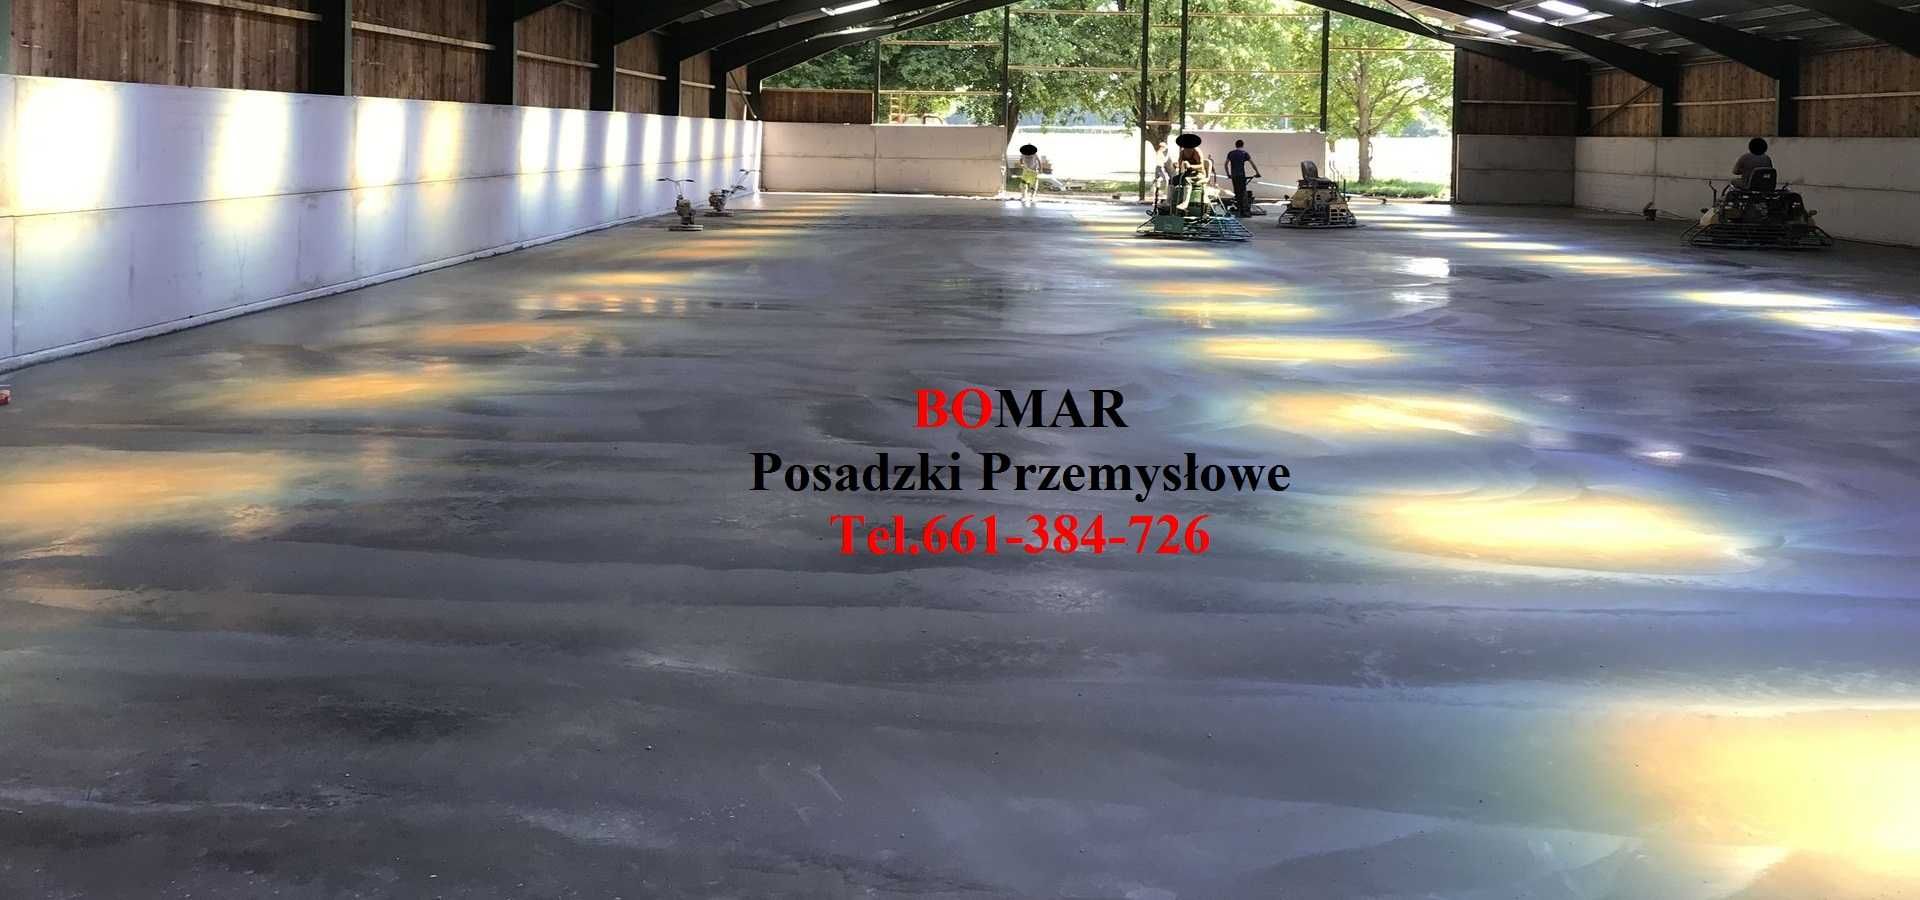 Posadzki betonowe przemysłowe Błaszki, Sieradz, Warta, Zduńska W, Łask